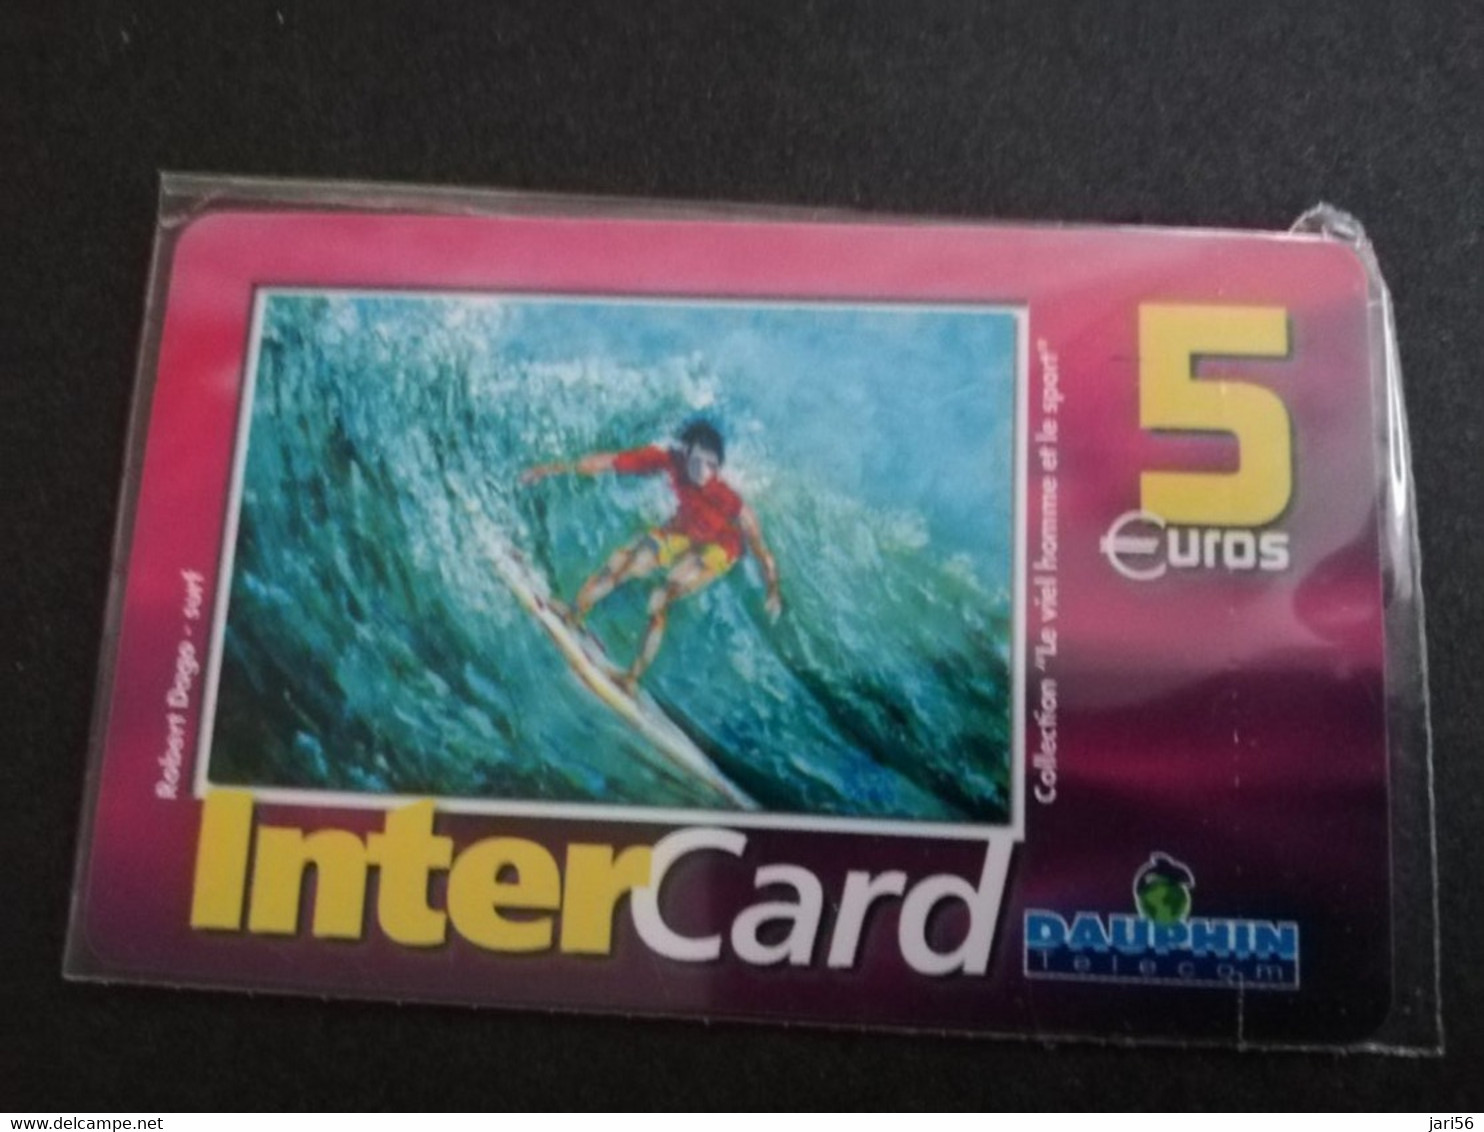 ST MARTIN  INTERCARD  ROBERT DAGO  SURF          5 EURO /   INTER 136 / MINT CARD    ** 9254 ** - Antilles (Françaises)